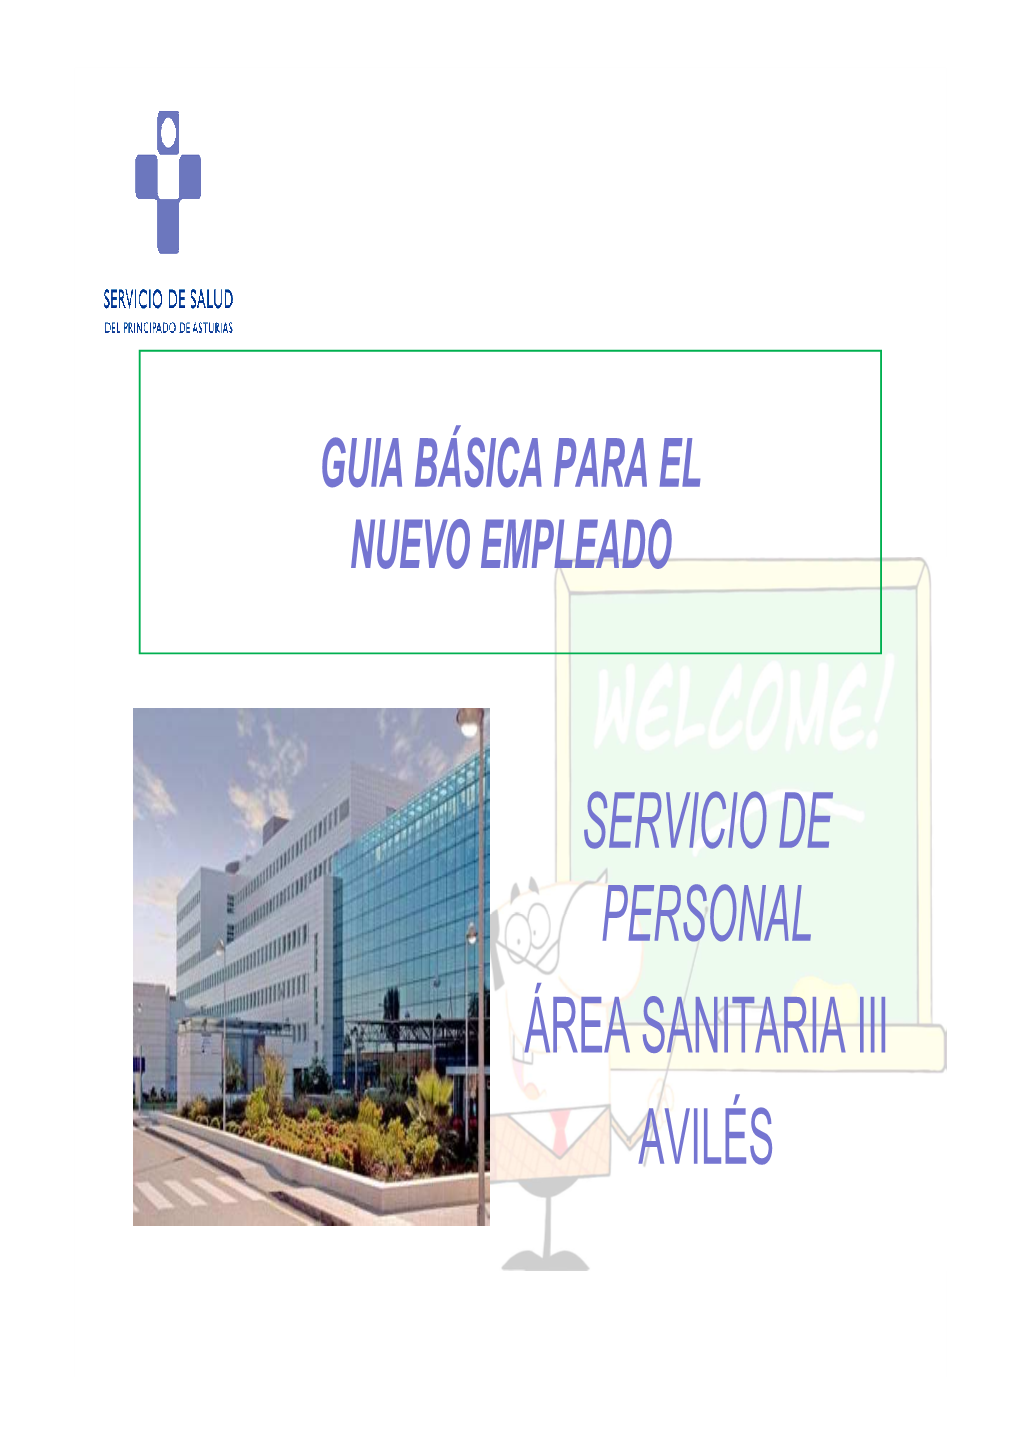 SERVICIO DE PERSONAL ÁREA SANITARIA III AVILÉS Bienvenido Al Área Sanitaria III